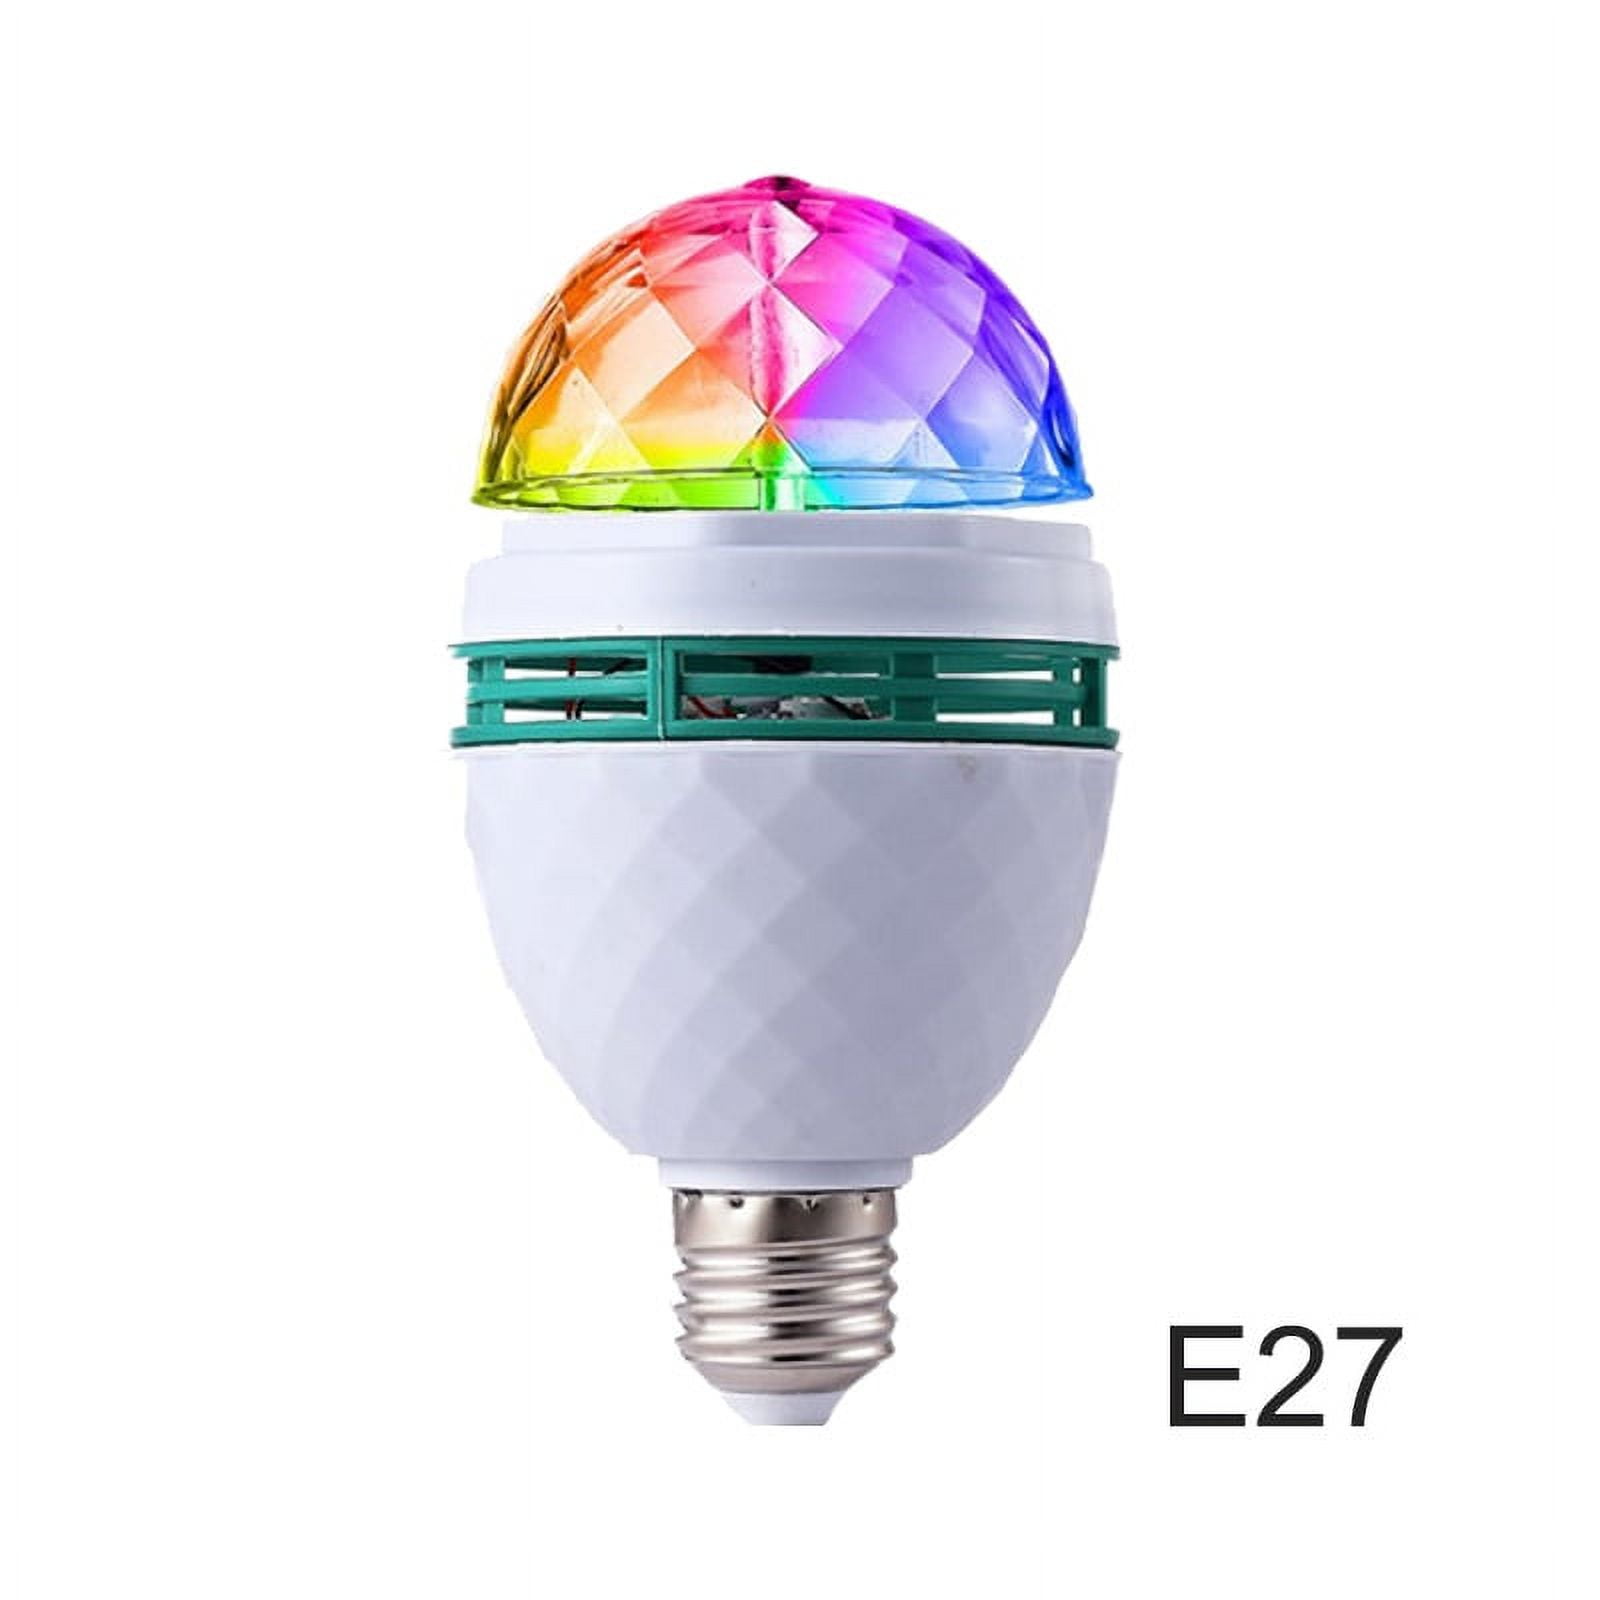 Ampoule LED E27, lampe disco, 3 W, RVB multicolore, tournant